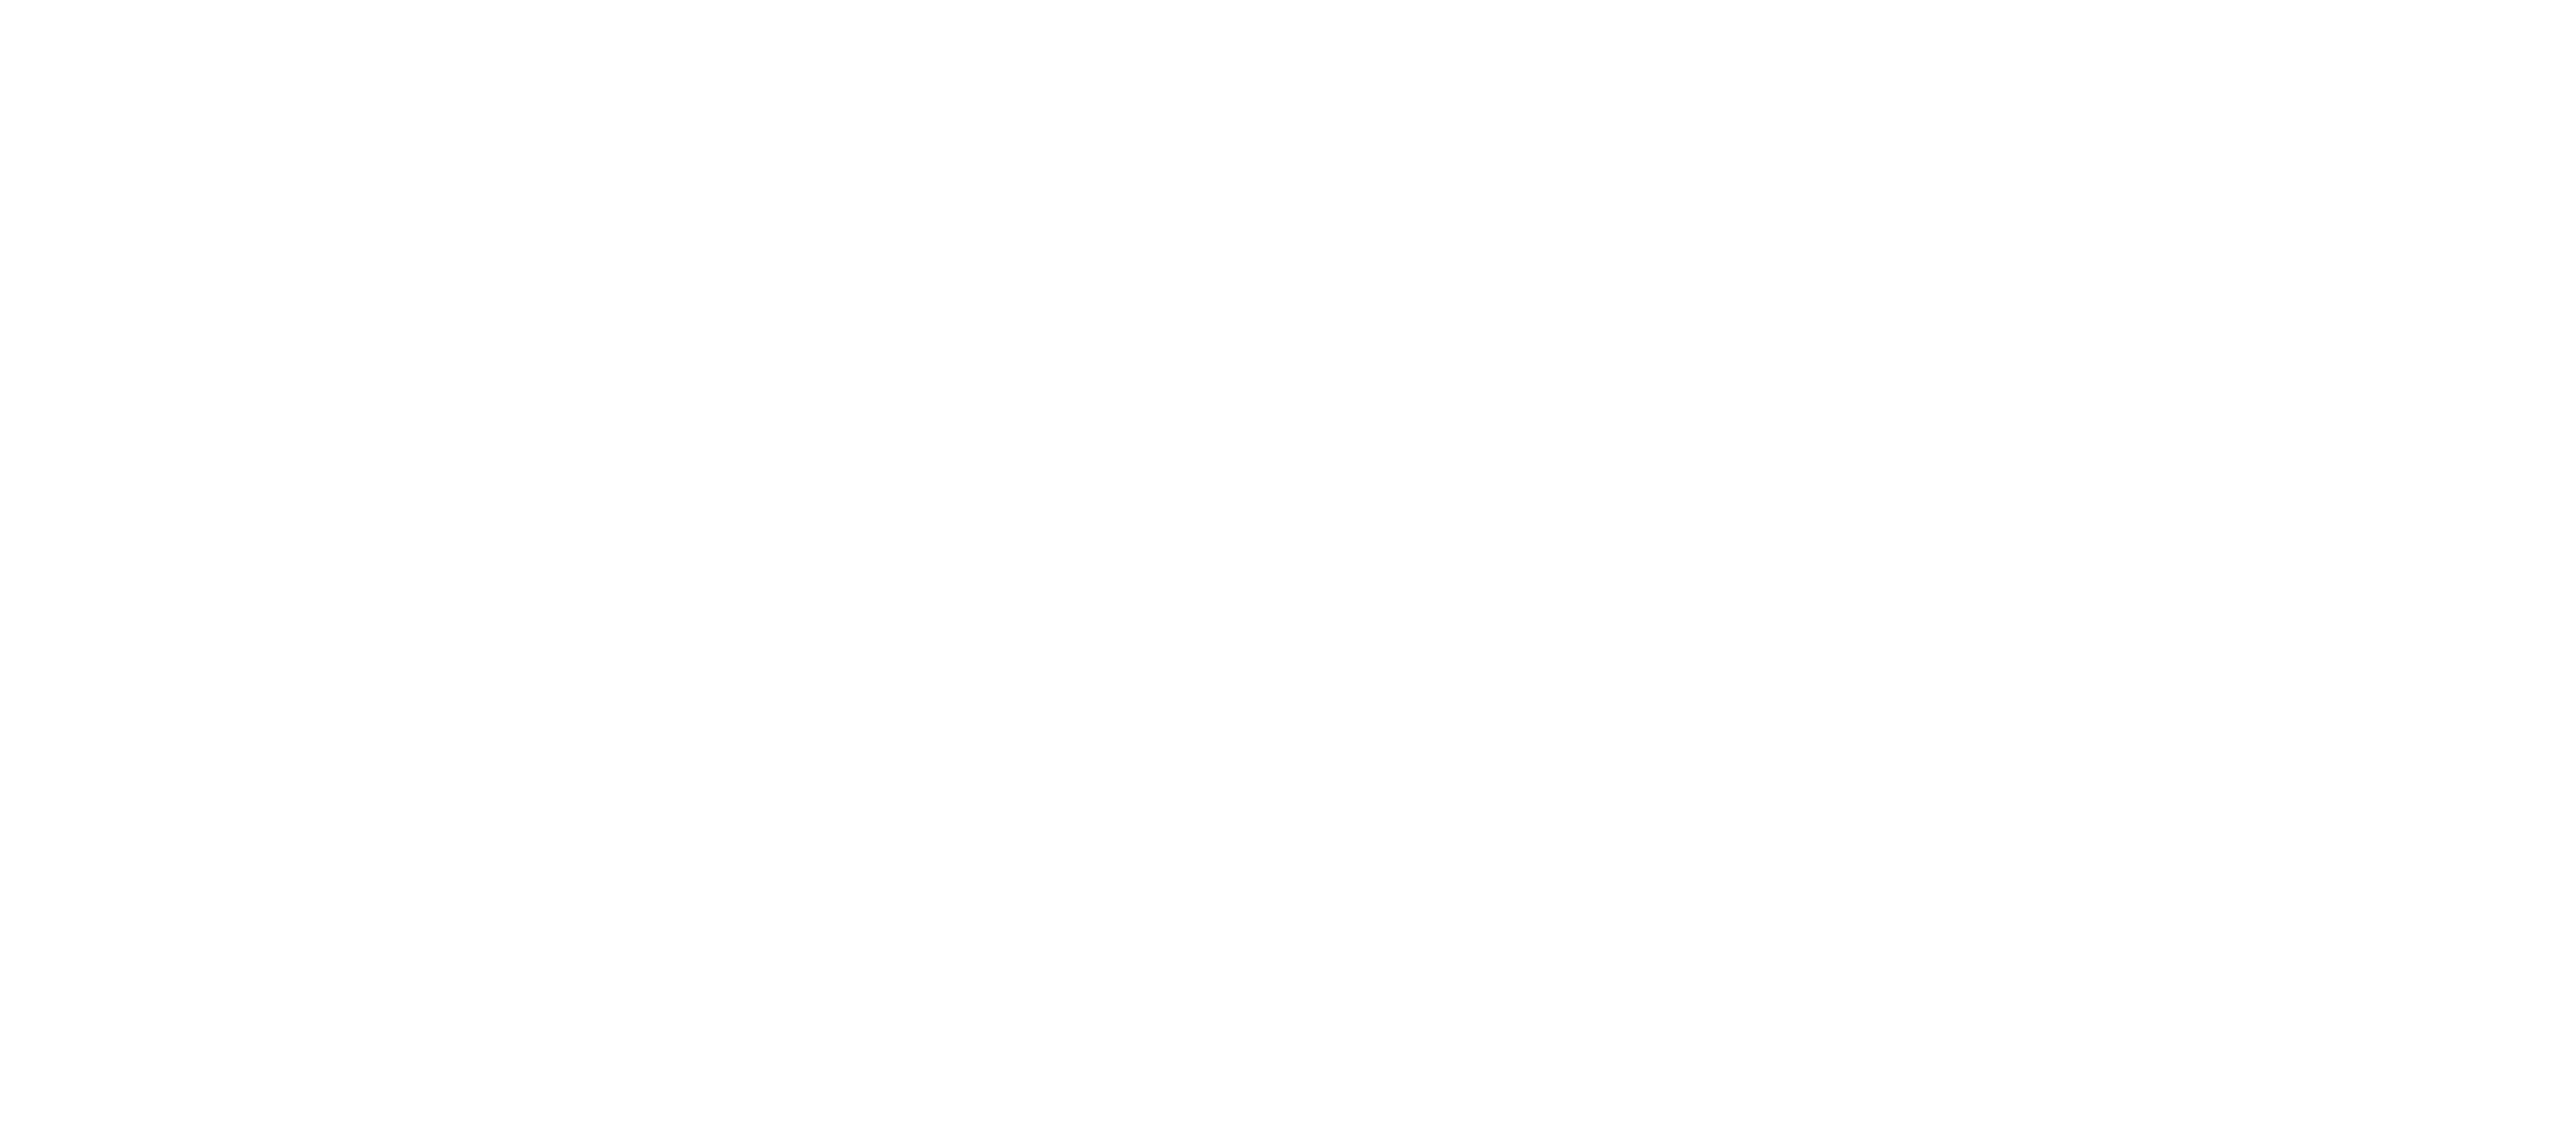 ATLAS Full Logo - White